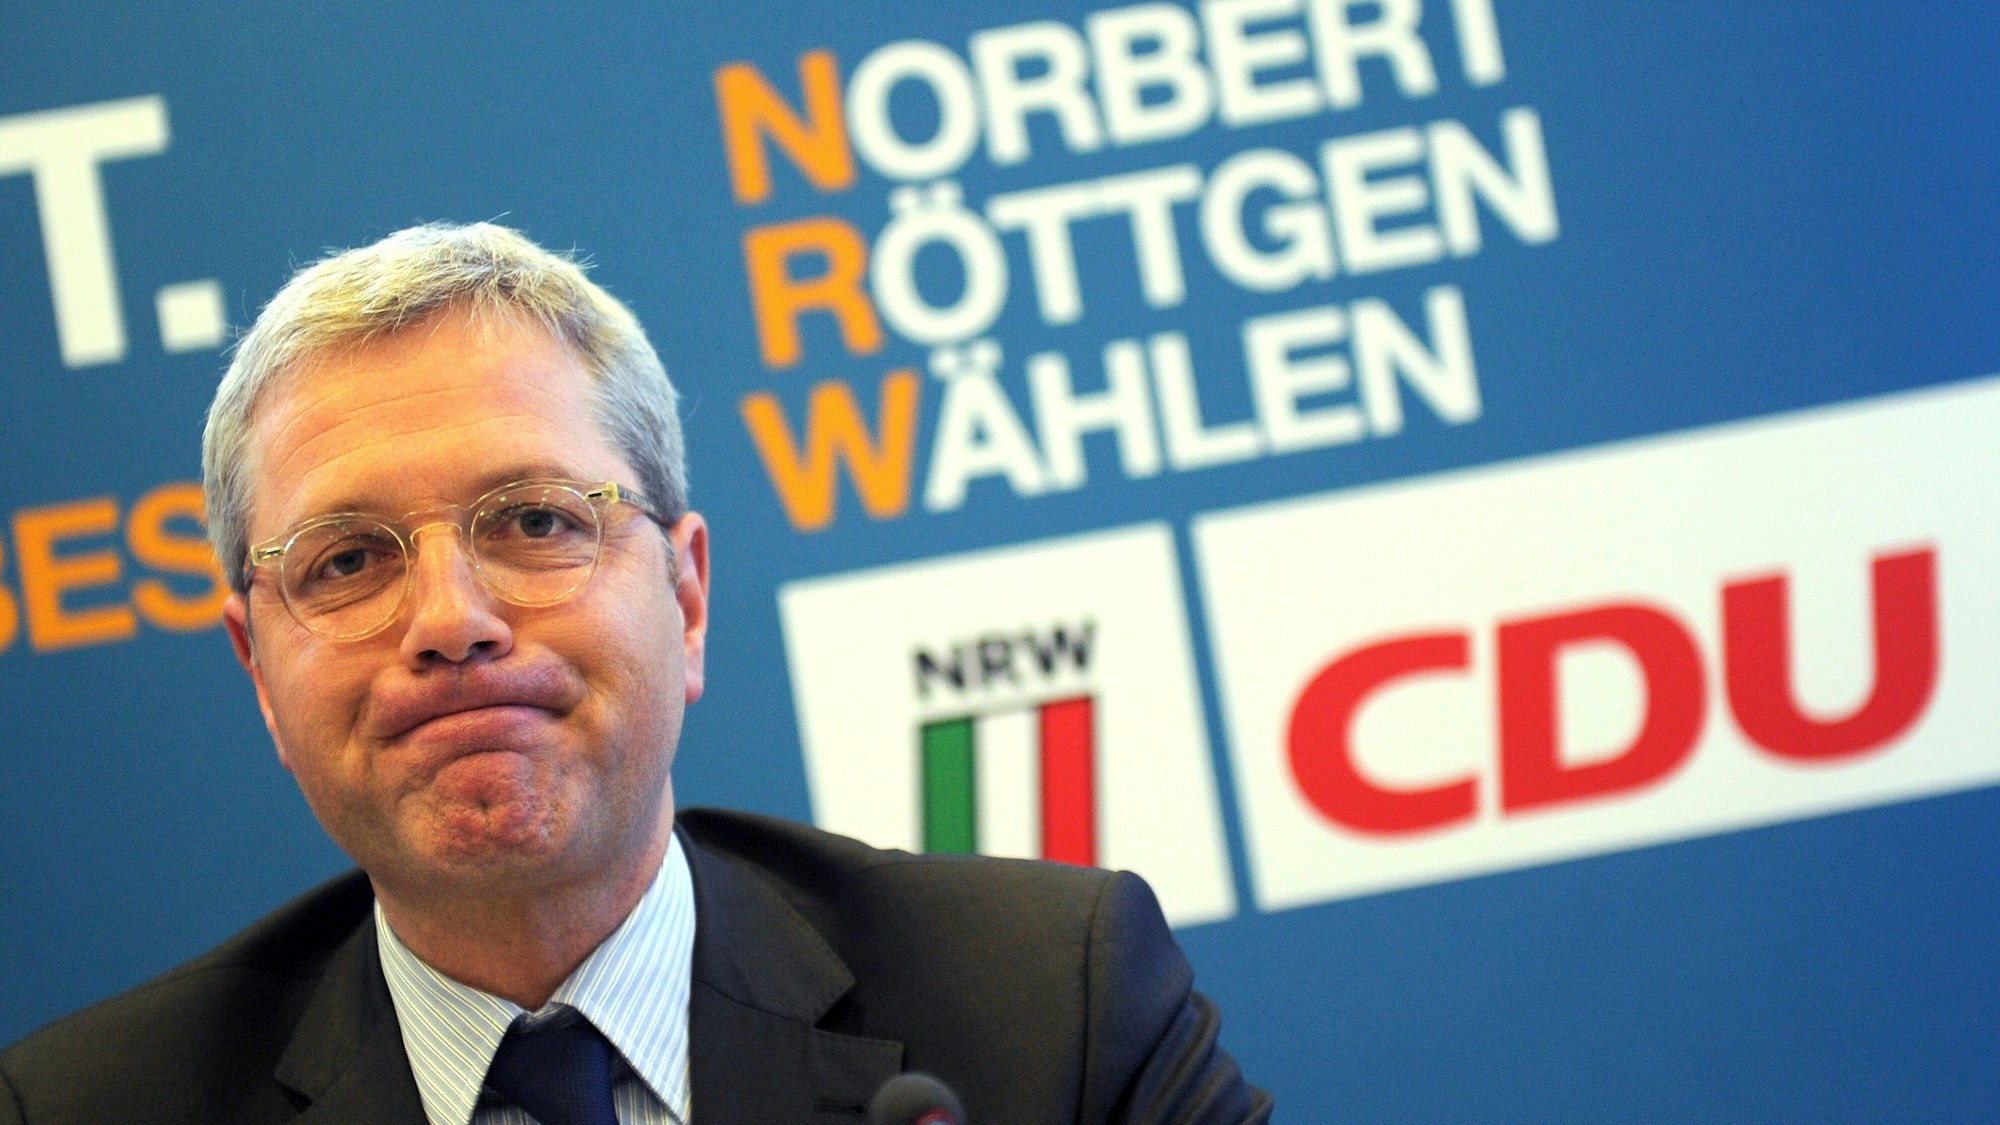 Der Spitzenkandidat der nordrhein-westfälischen CDU zur Landtagswahl 2012, Norbert Röttgen, stellt am Dienstag (17.04.2012) in der Parteizentrale in Düsseldorf weitere Mitglieder seines Schattenkabinetts vor. Foto: Caroline Seidel dpa/lnw ++ +++ dpa-Bildfunk +++